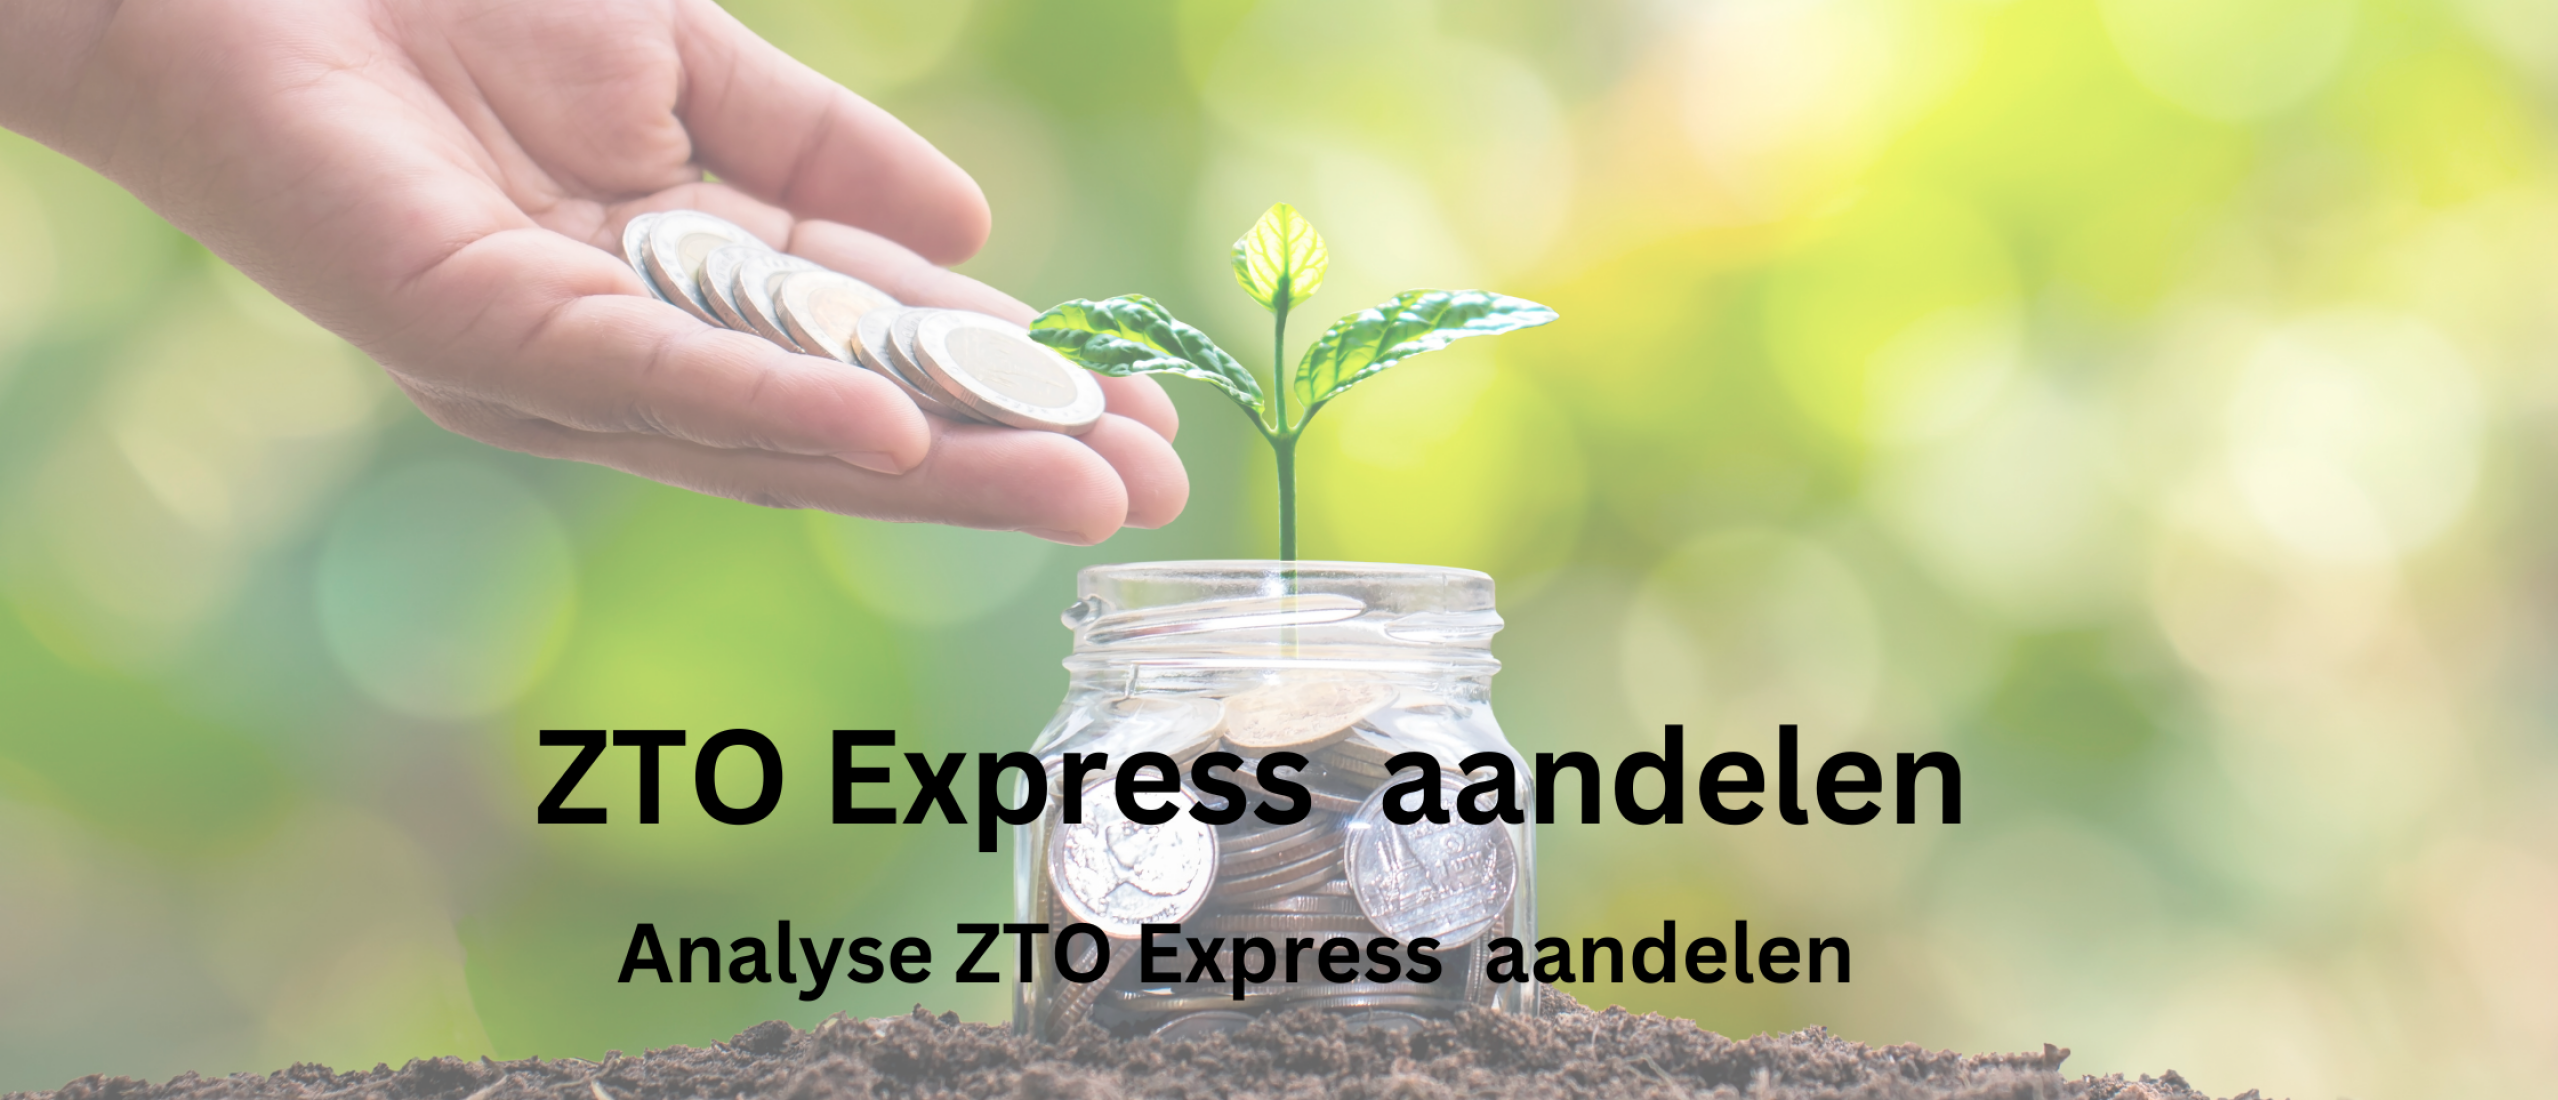 ZTO Express aandelen kopen? Analyse +35,5% Groei | Happy Investors